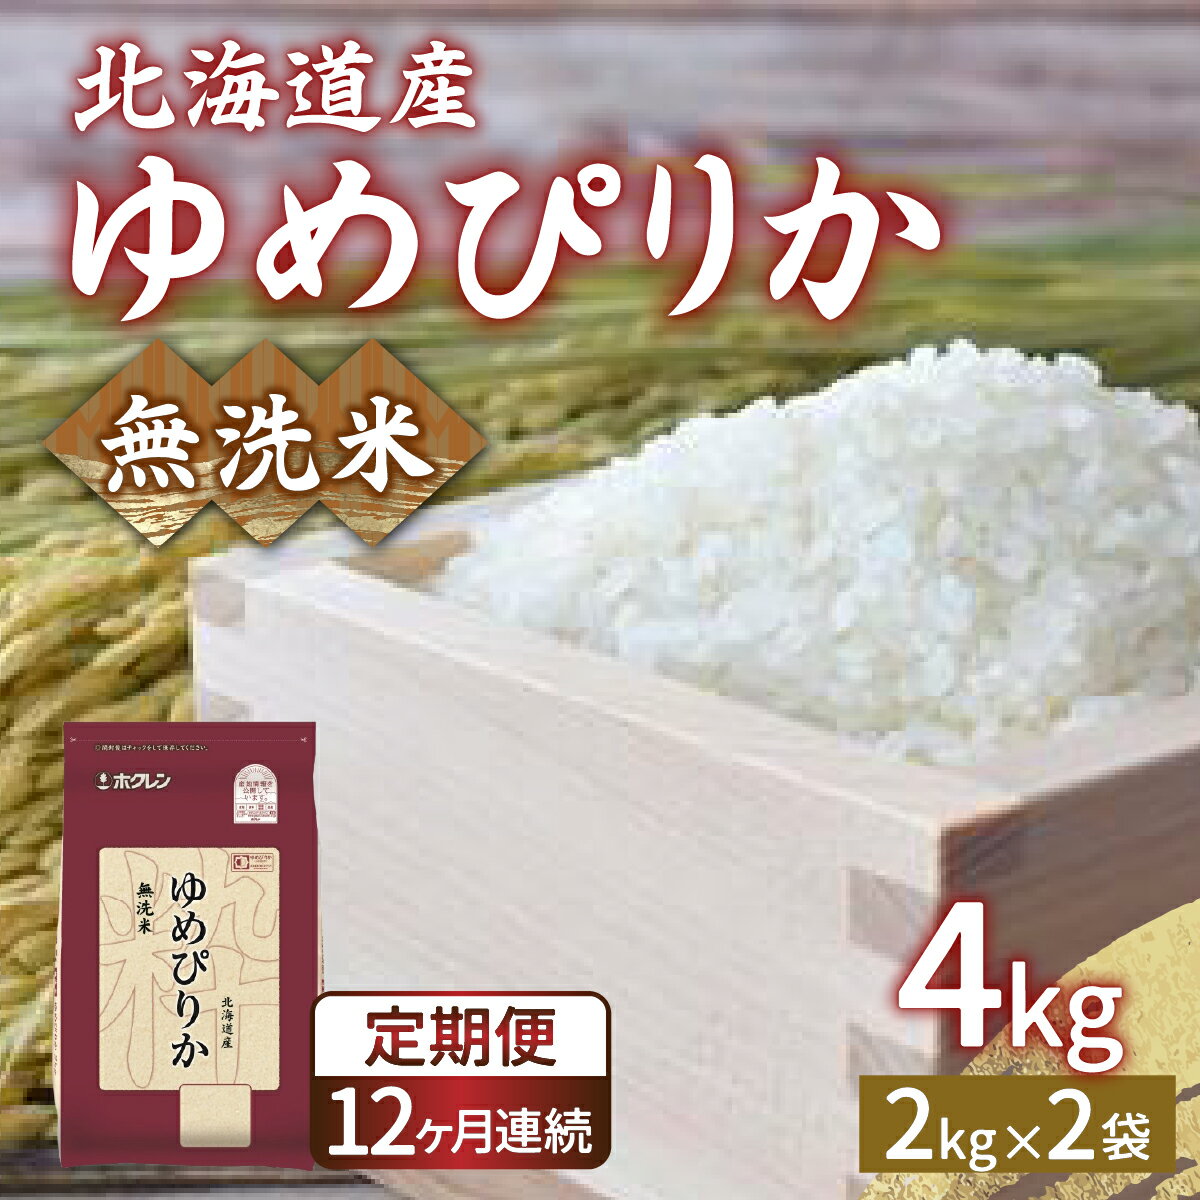 【ふるさと納税】【定期配送1年】ホクレン ゆめぴりか 無洗米